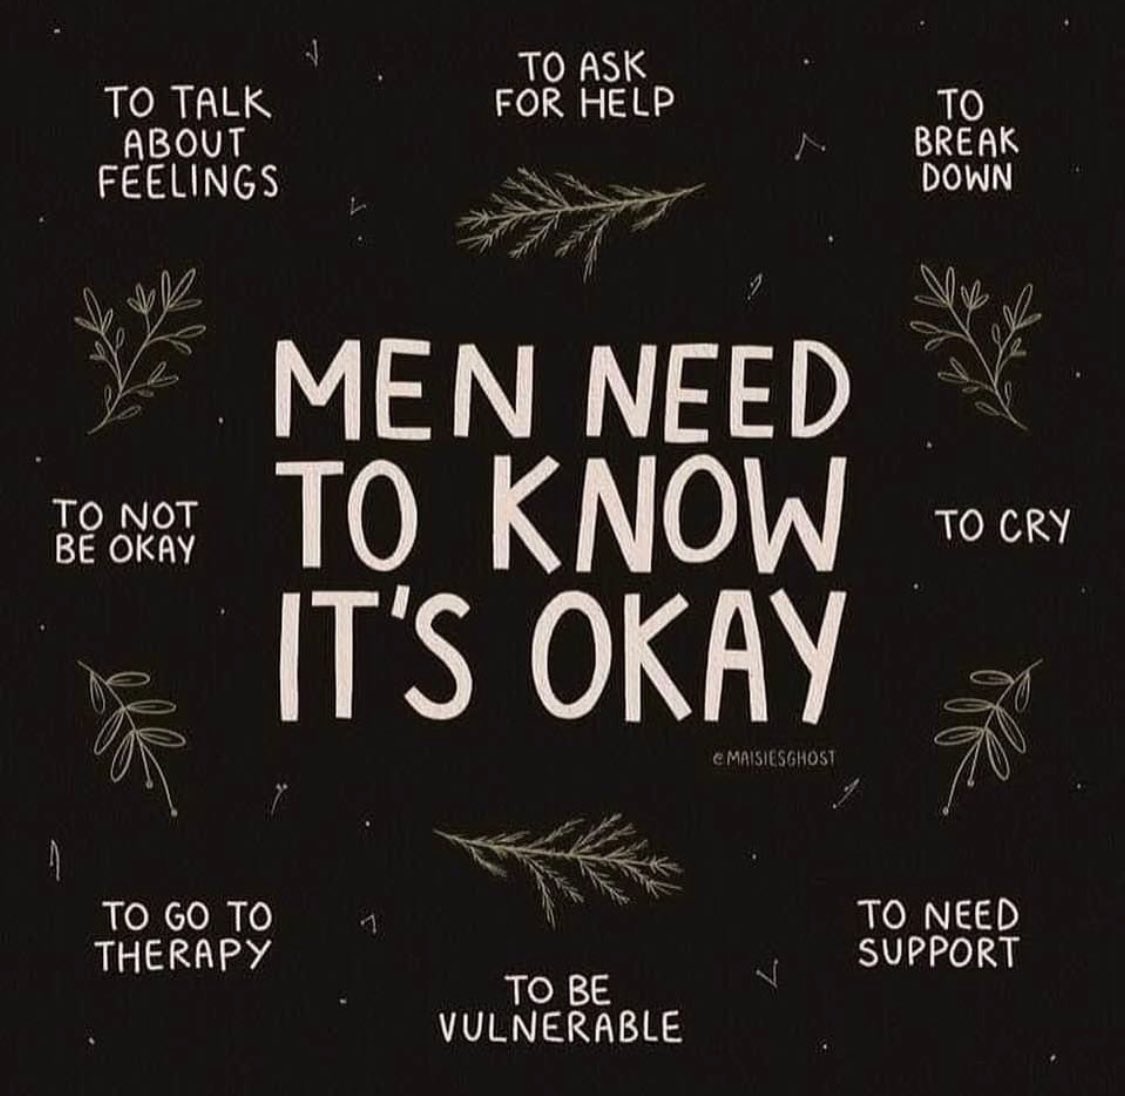 men, you are never alone ❤️‍🩹 #MensMentalHealthMonth